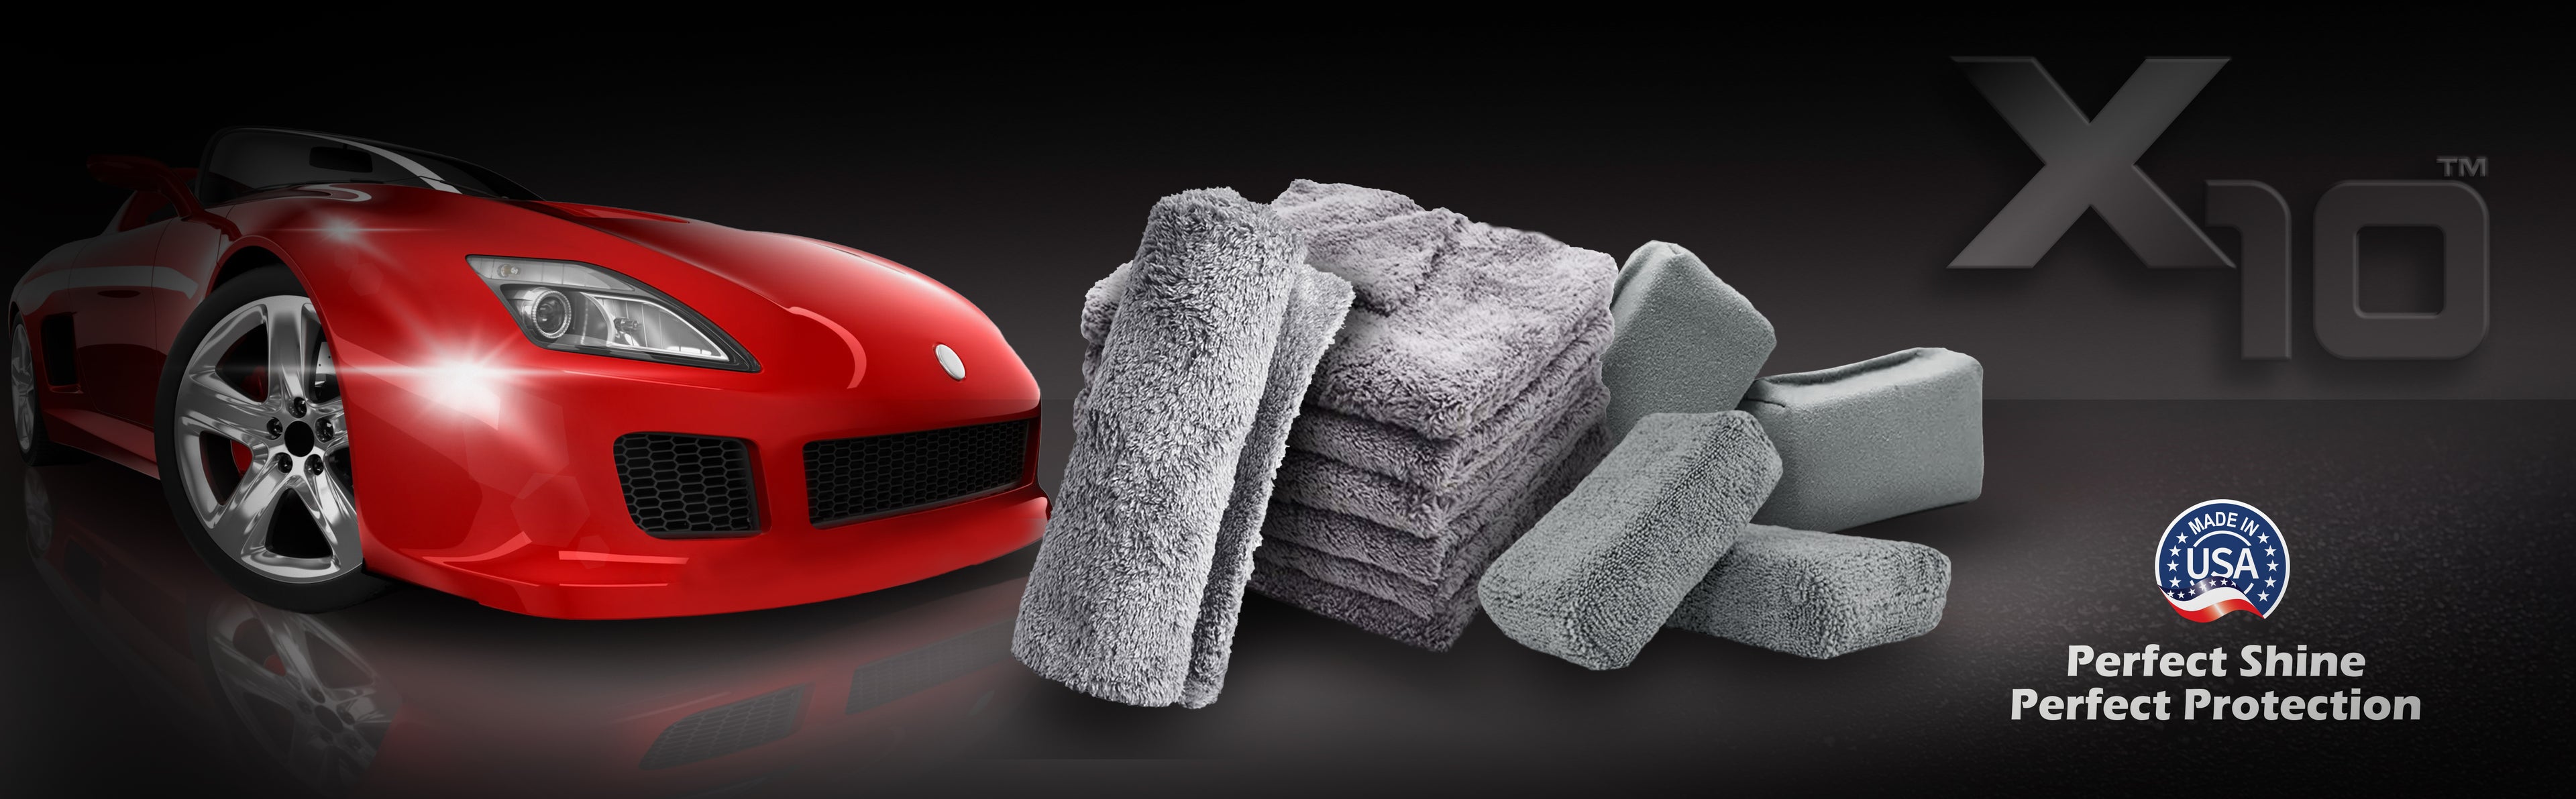 car applicators + towels + car polish